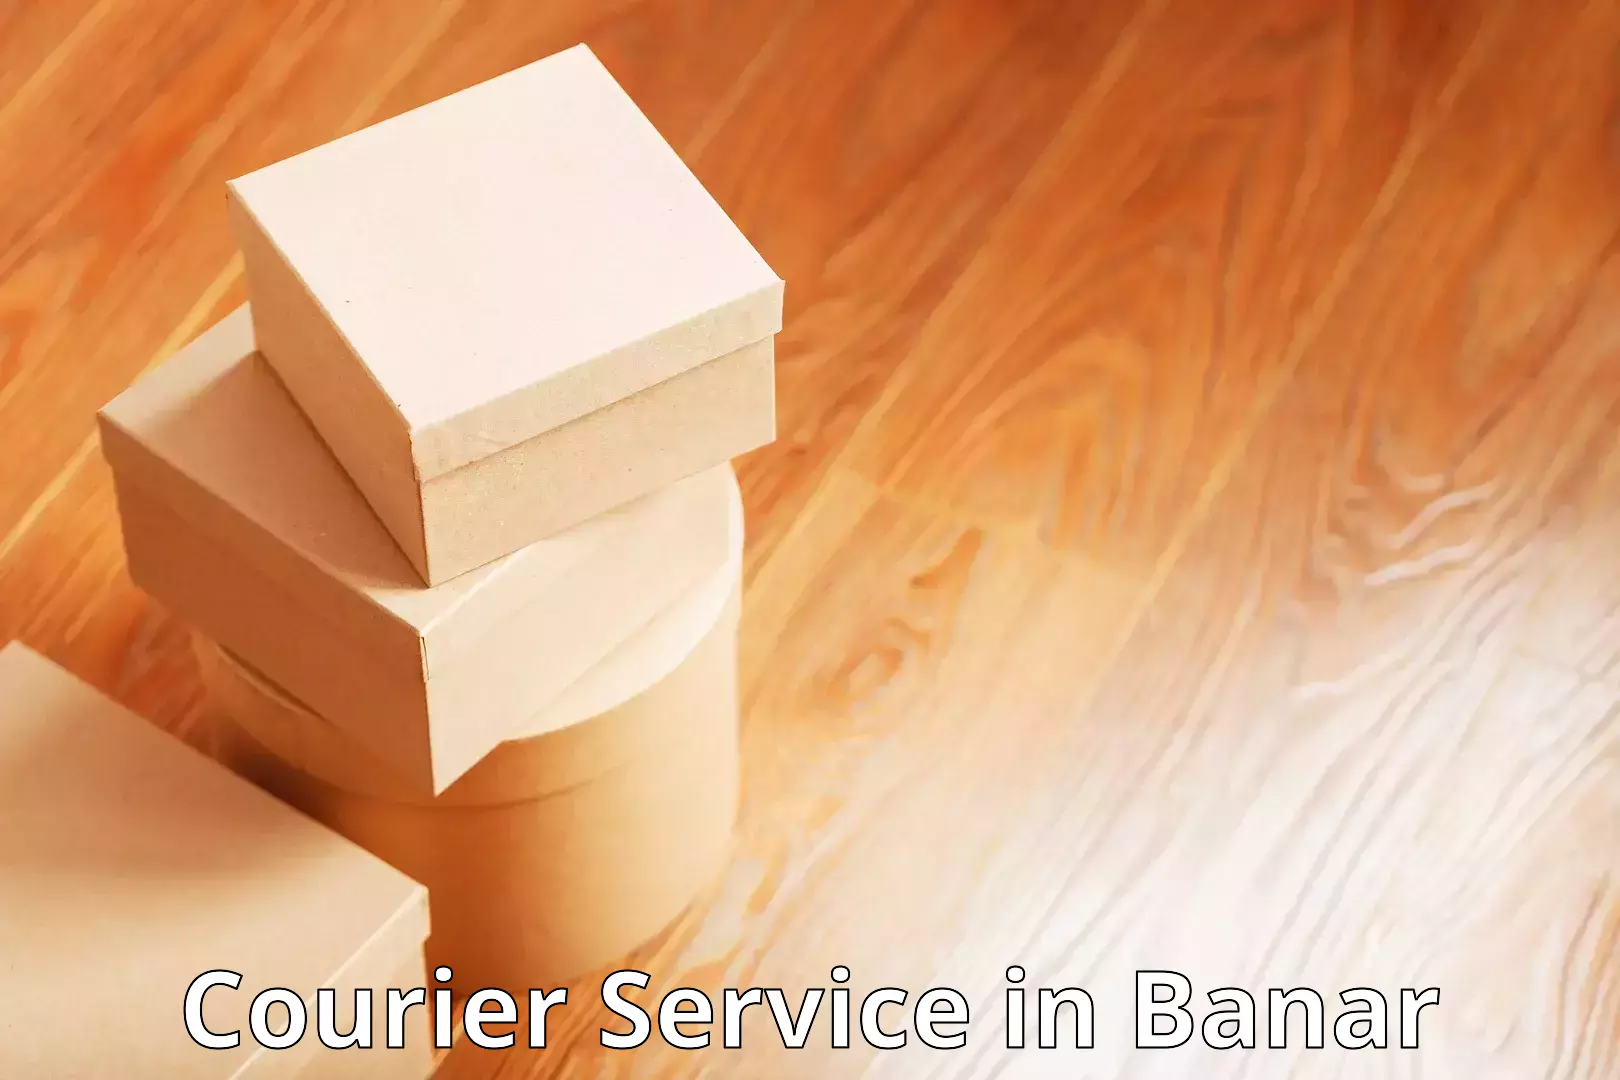 Affordable parcel service in Banar